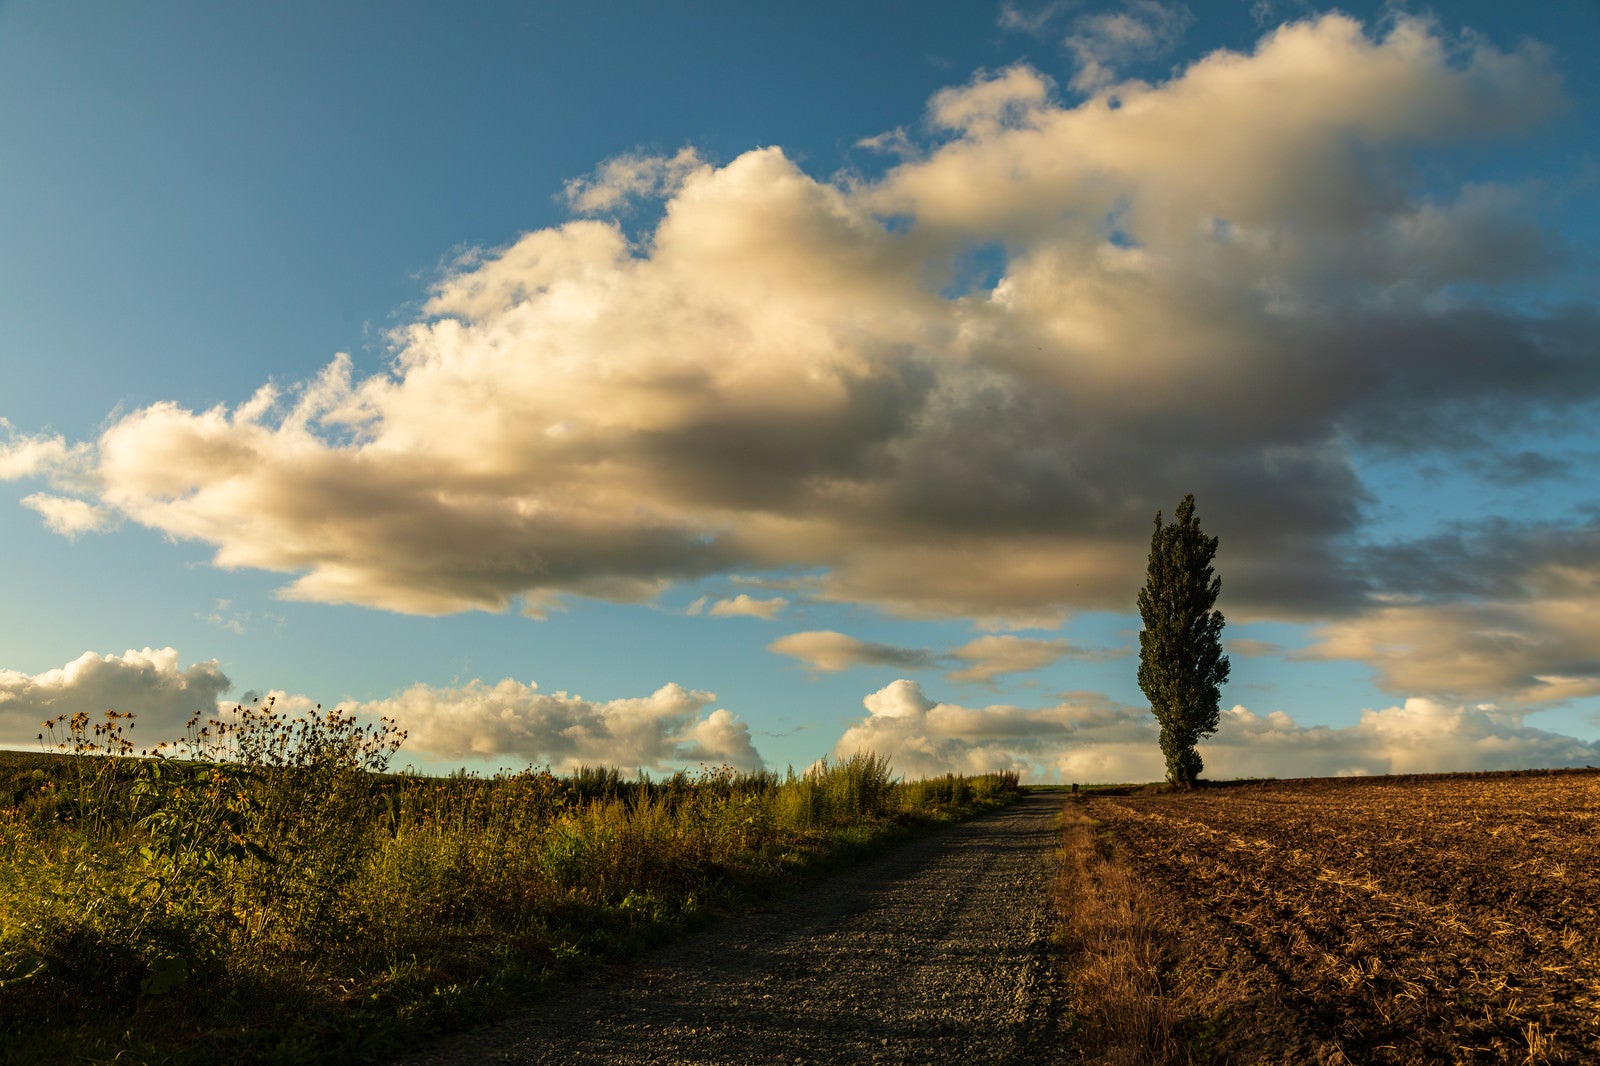 「耕された畑に立つポプラの木と雲」の写真